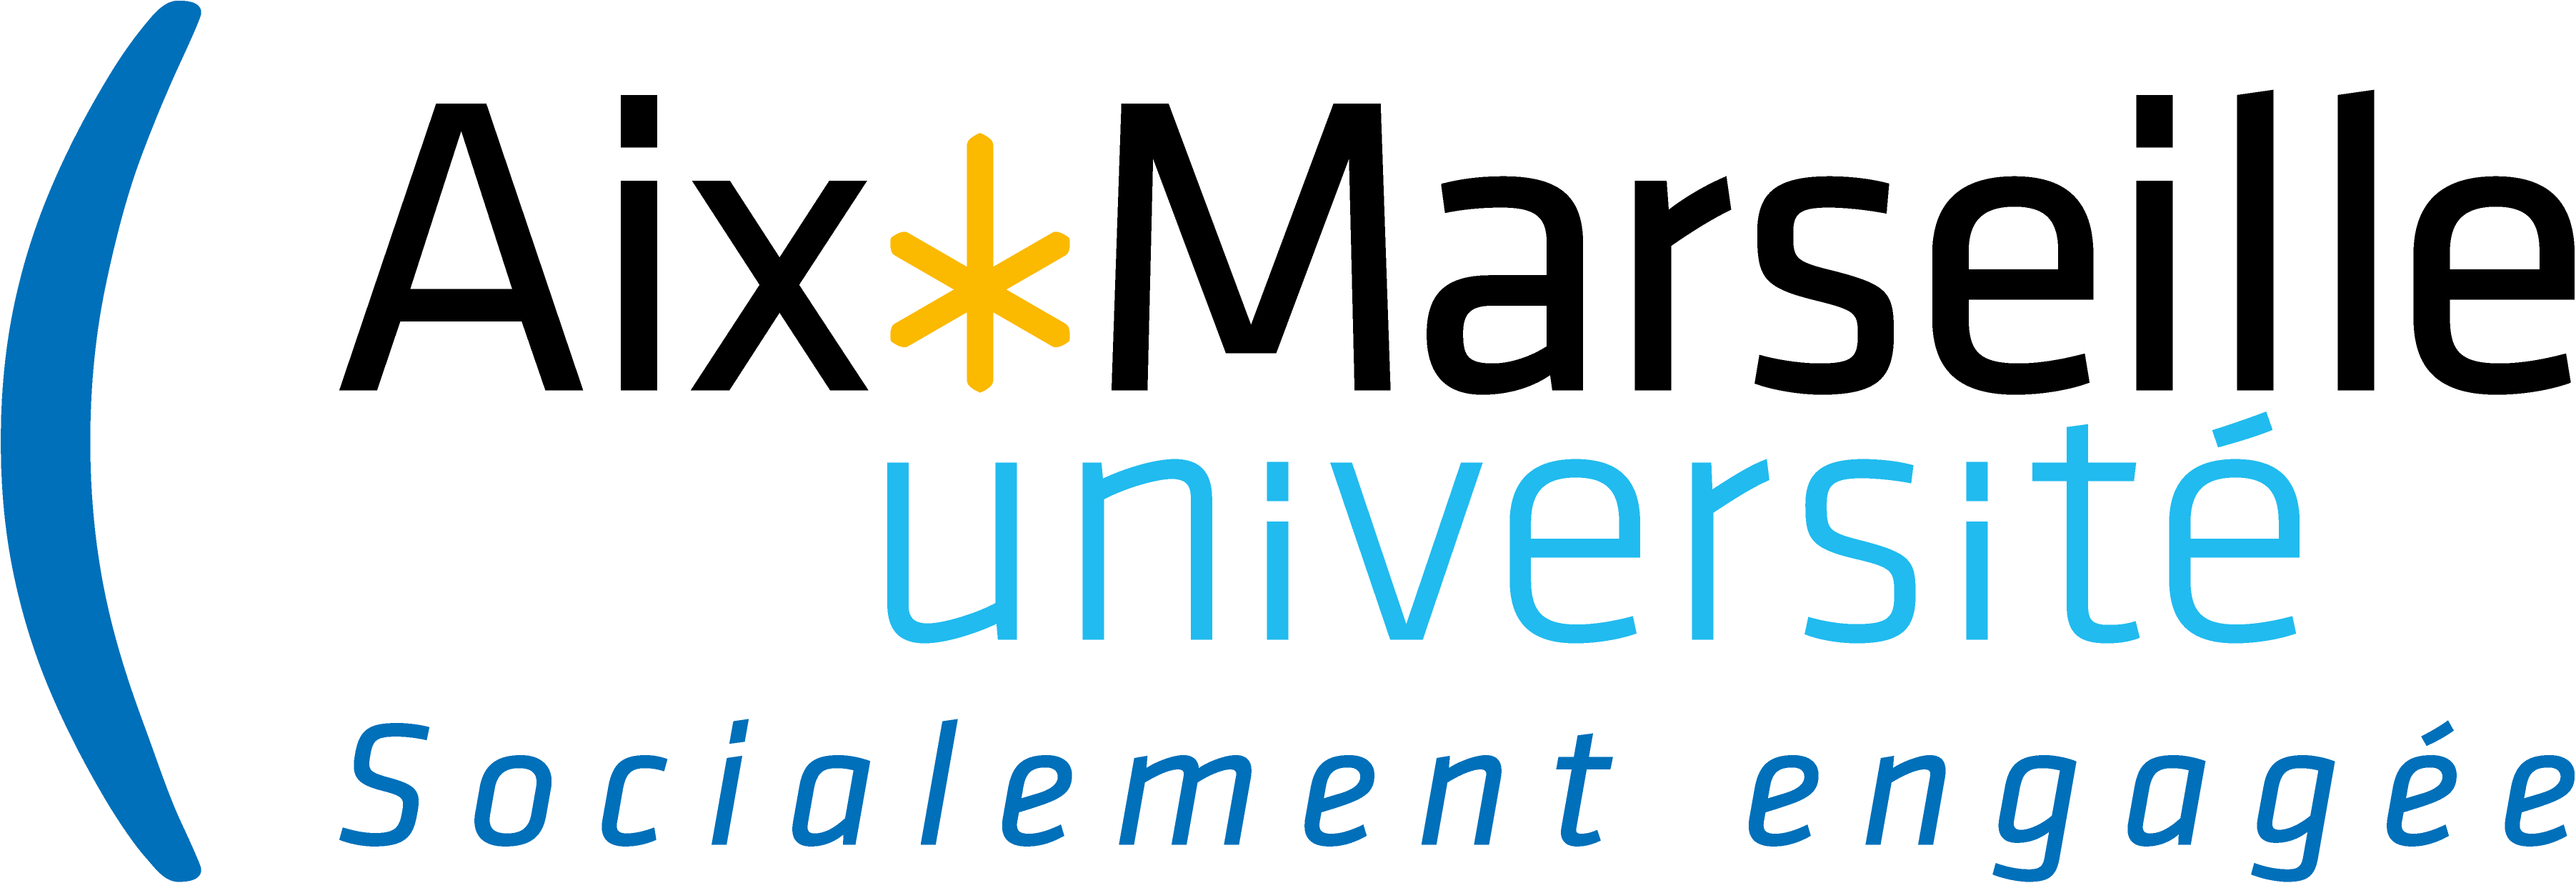 formation de Aix-Marseille-Université